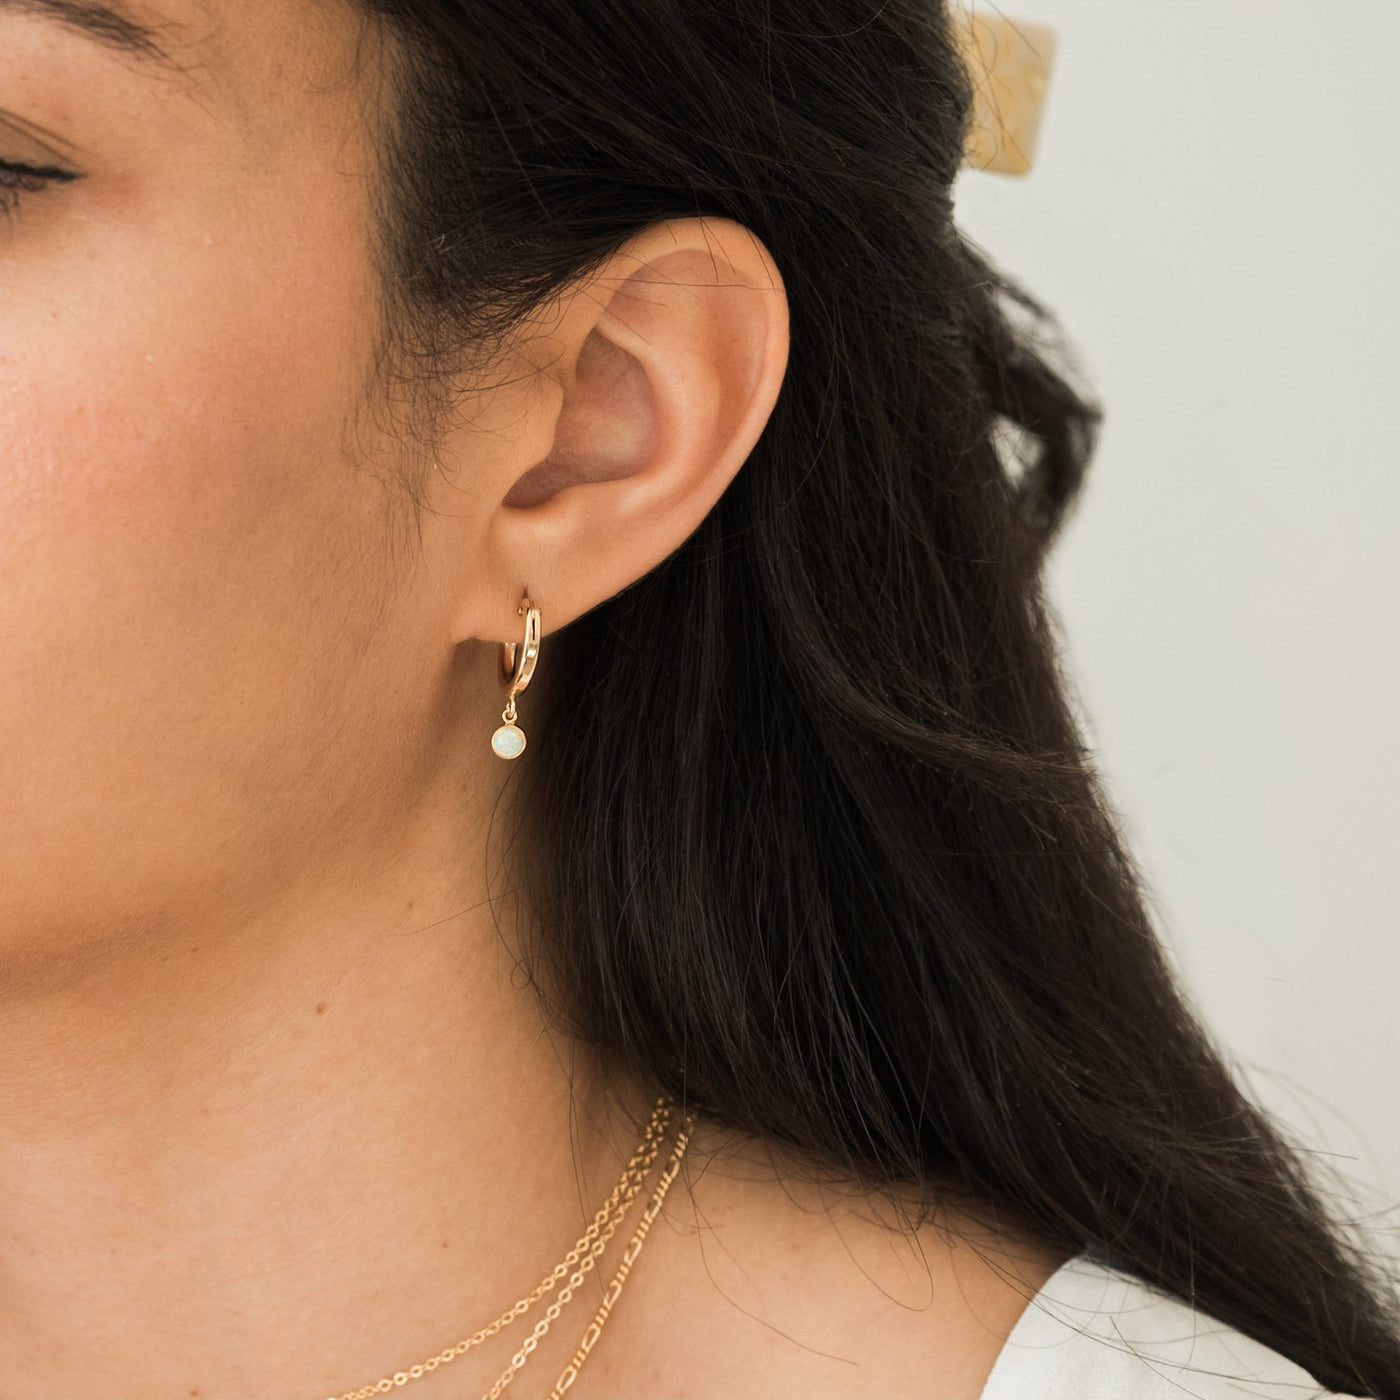 Tiny Opal Hoop Earrings | Simple & Dainty Jewelry